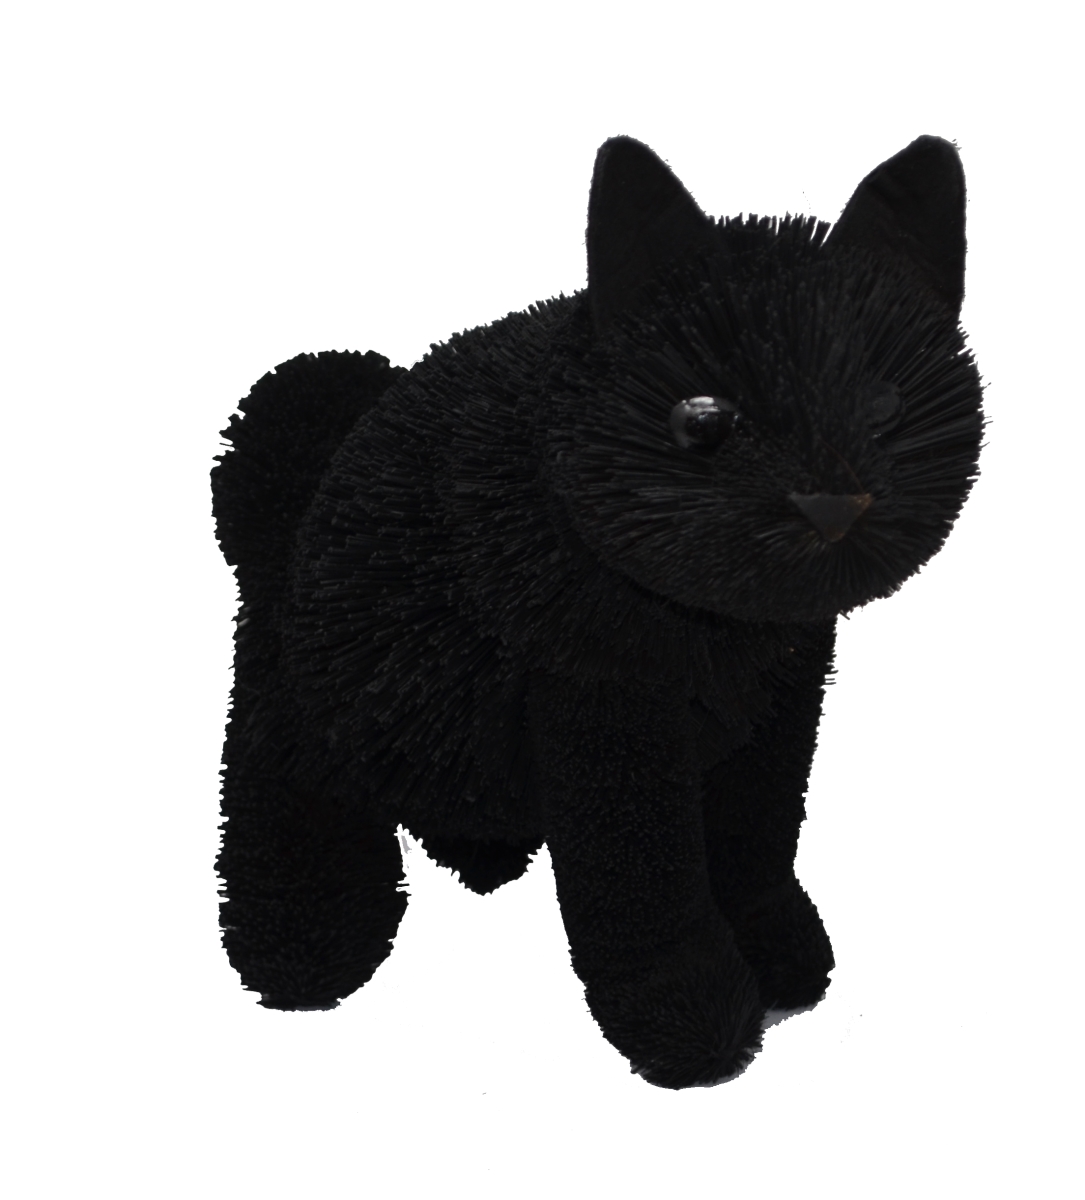 Brush01884 16 In. Black Cat Sitting Figurines